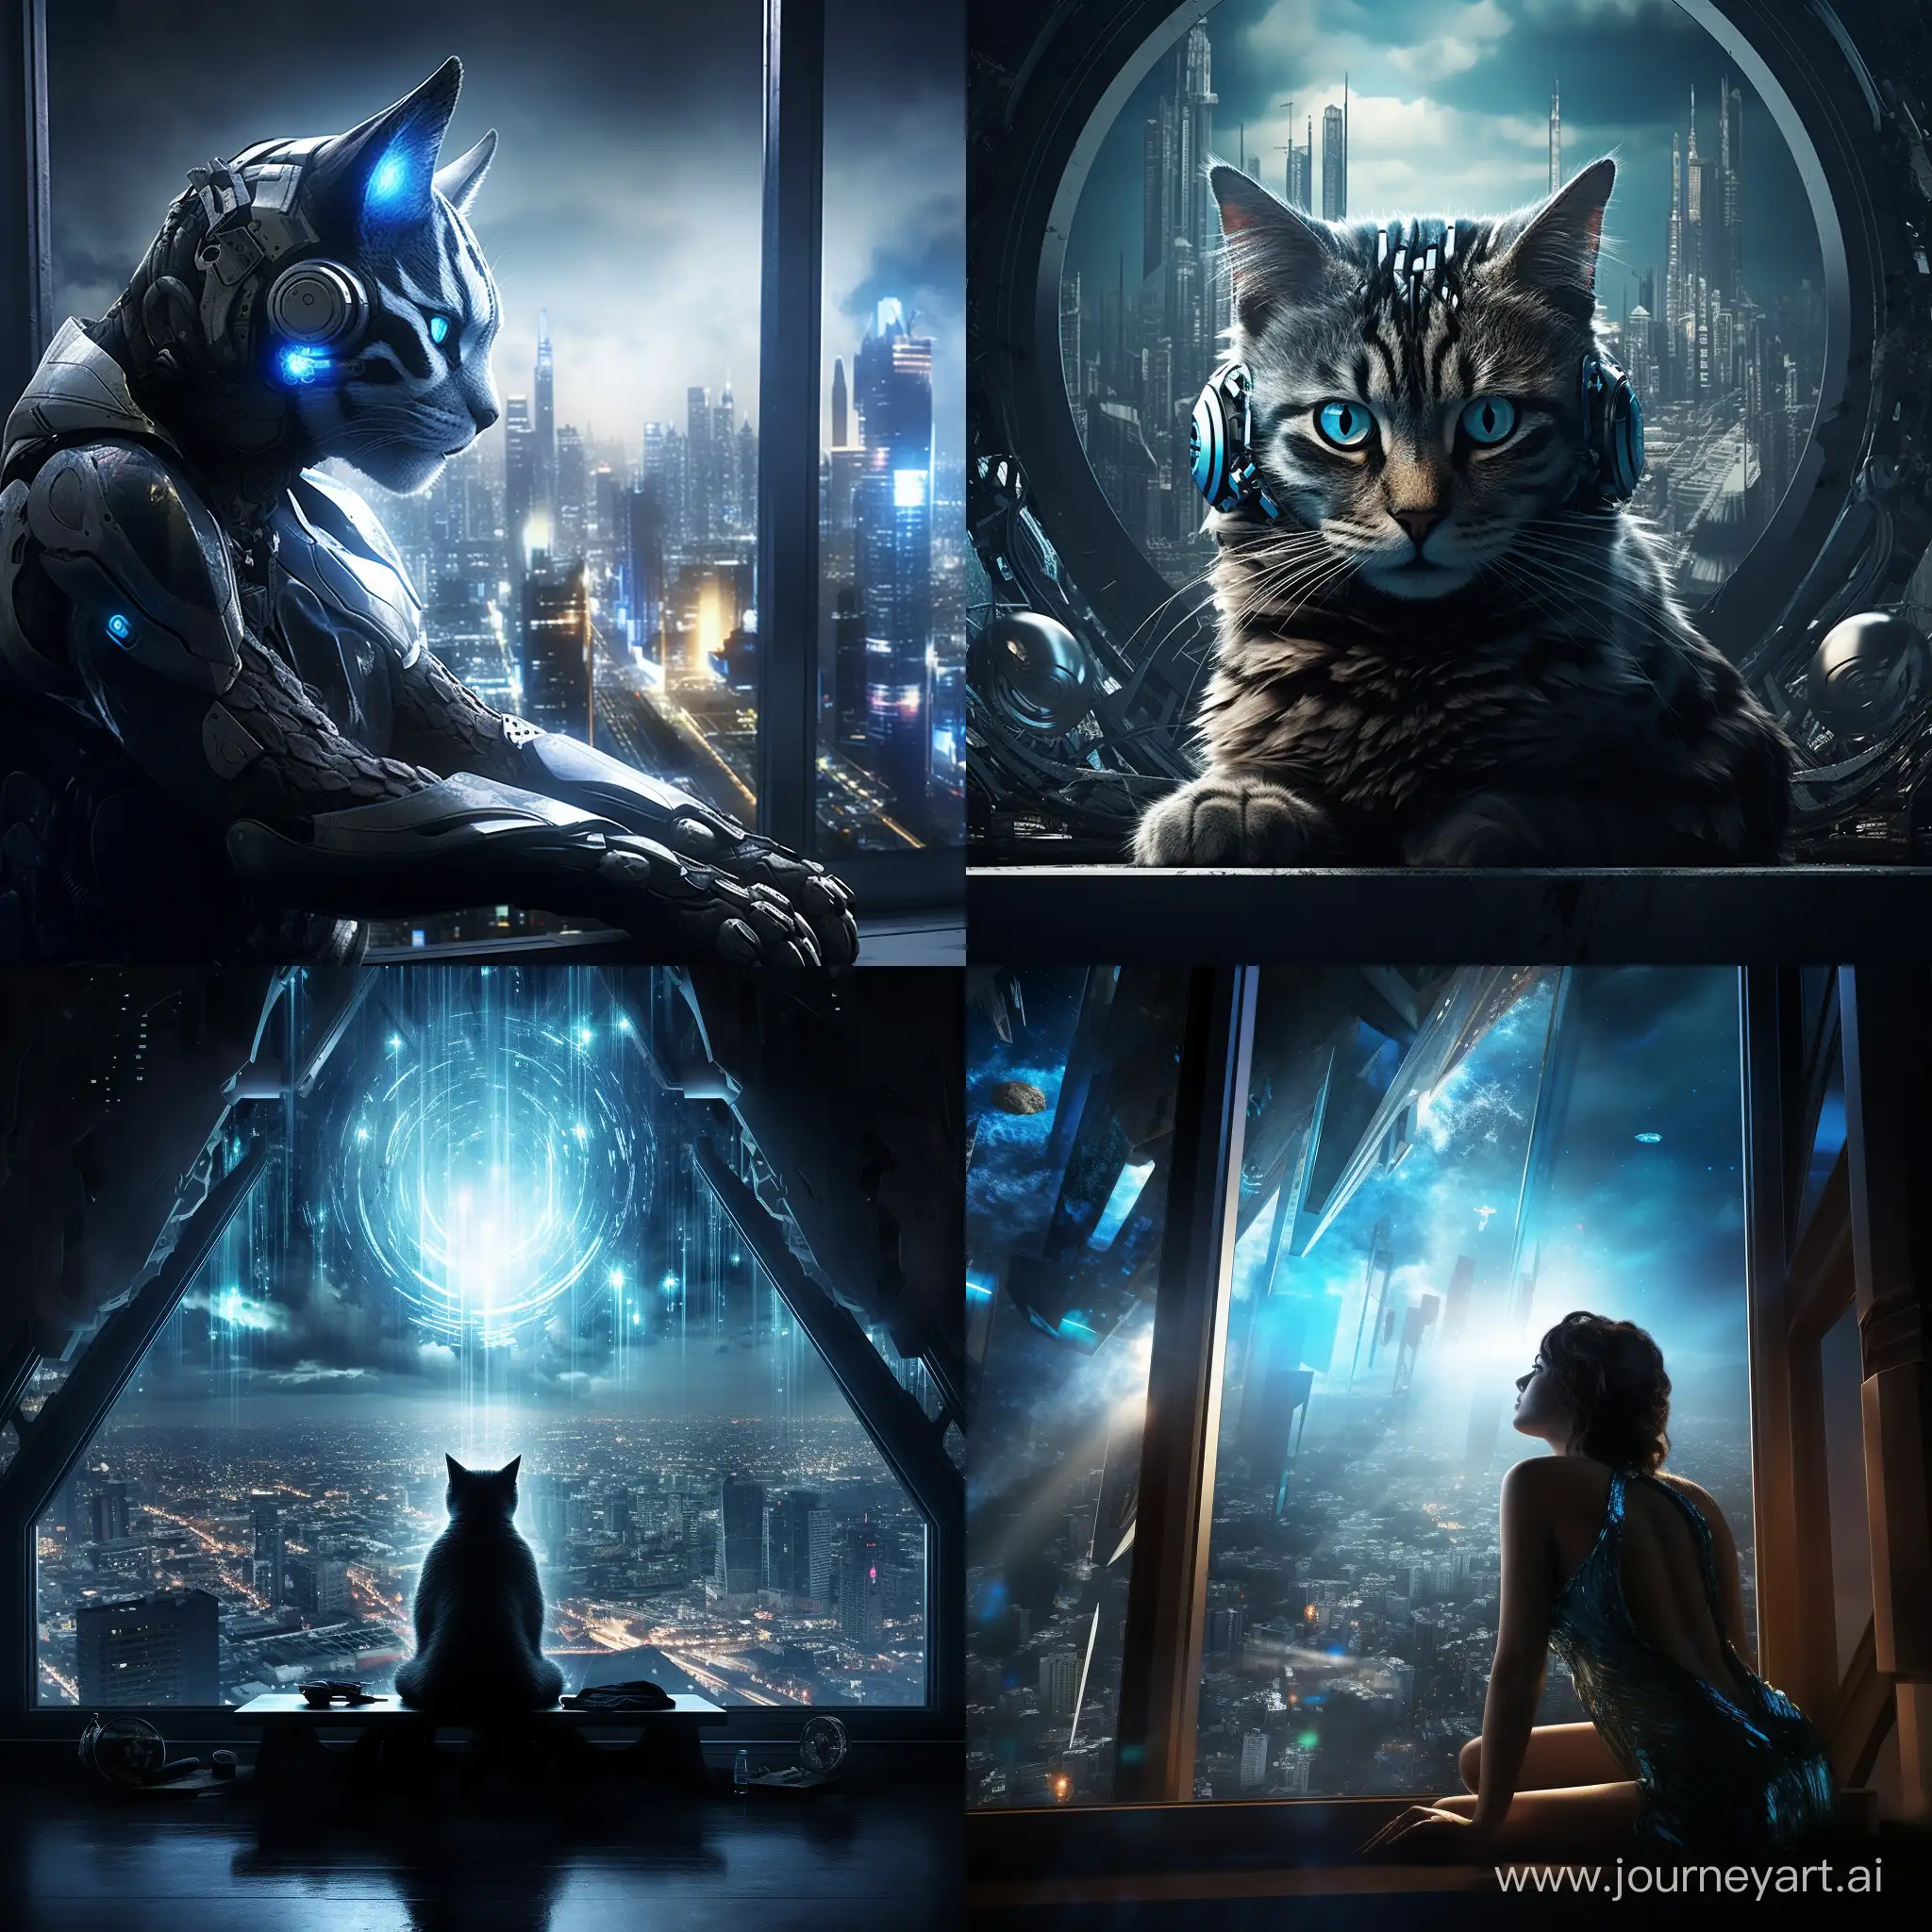 movie poster dramatic футуристический, ::1.5, голубая кошка с черными узорами разлеглась на фоне окна, свет проникает через окна отбрасывая блики на кошку